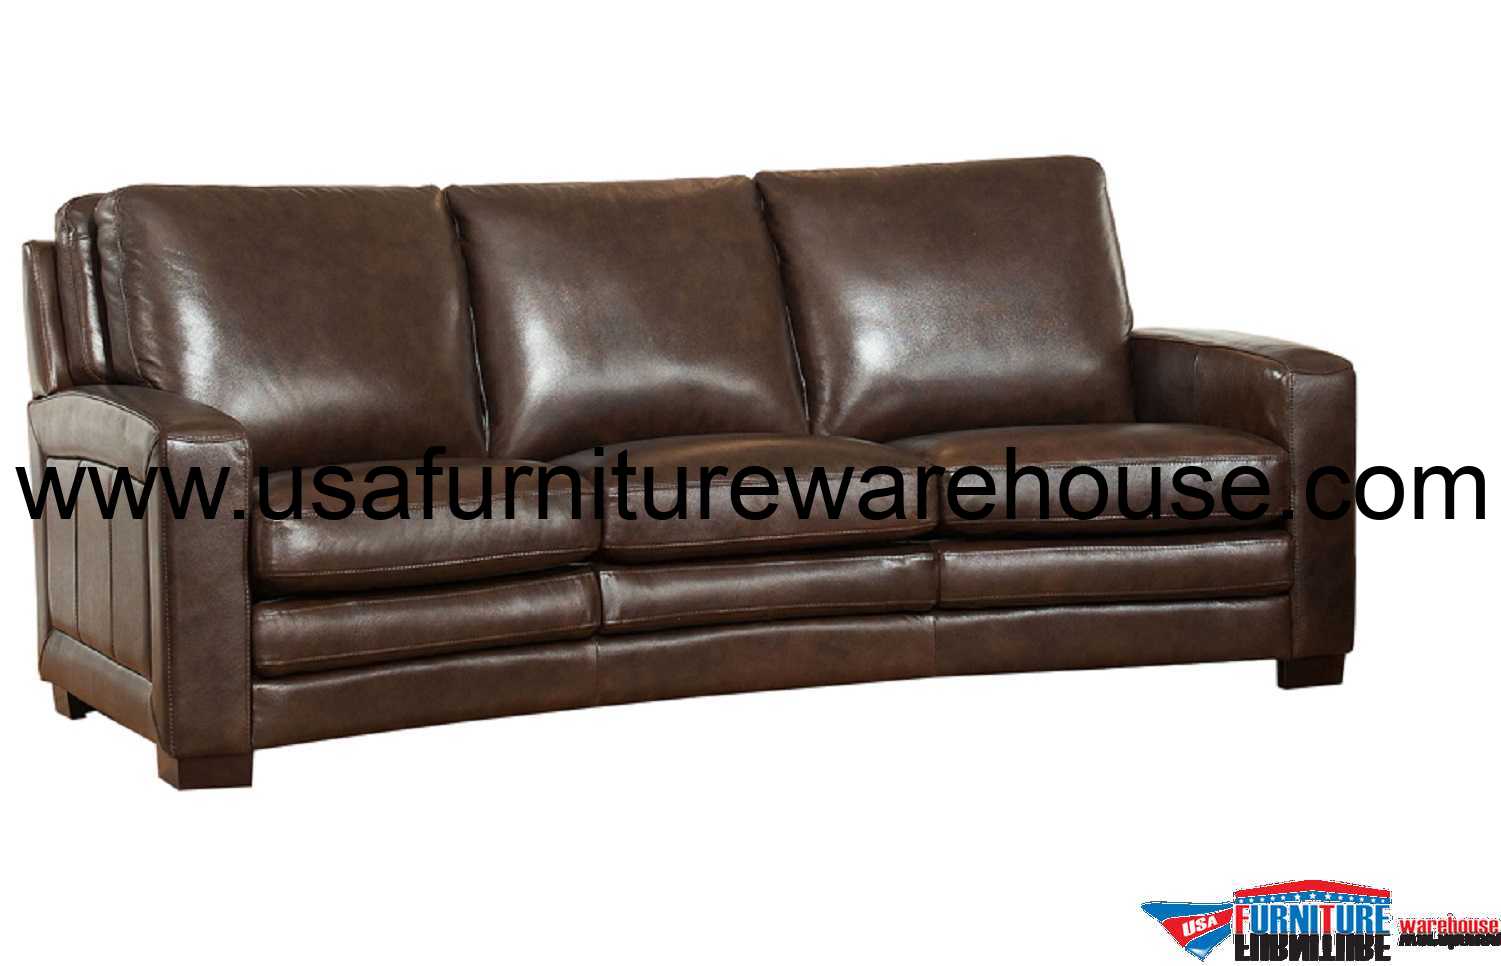 8 ft leather sofa